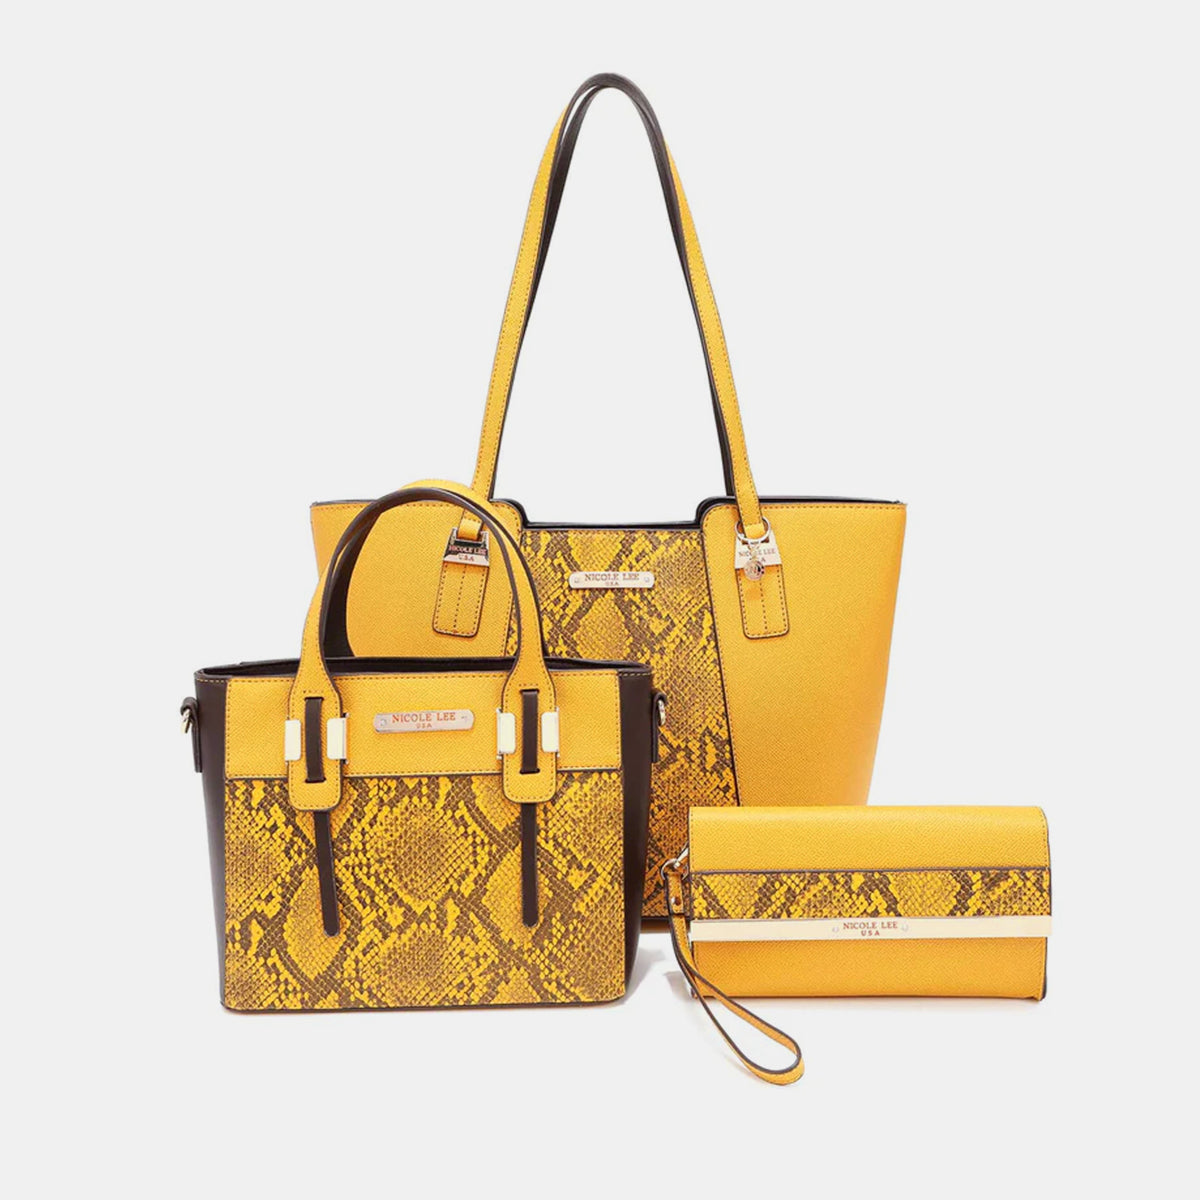 Nicole Lee USA Serpiente Handbag Set *4 colors*